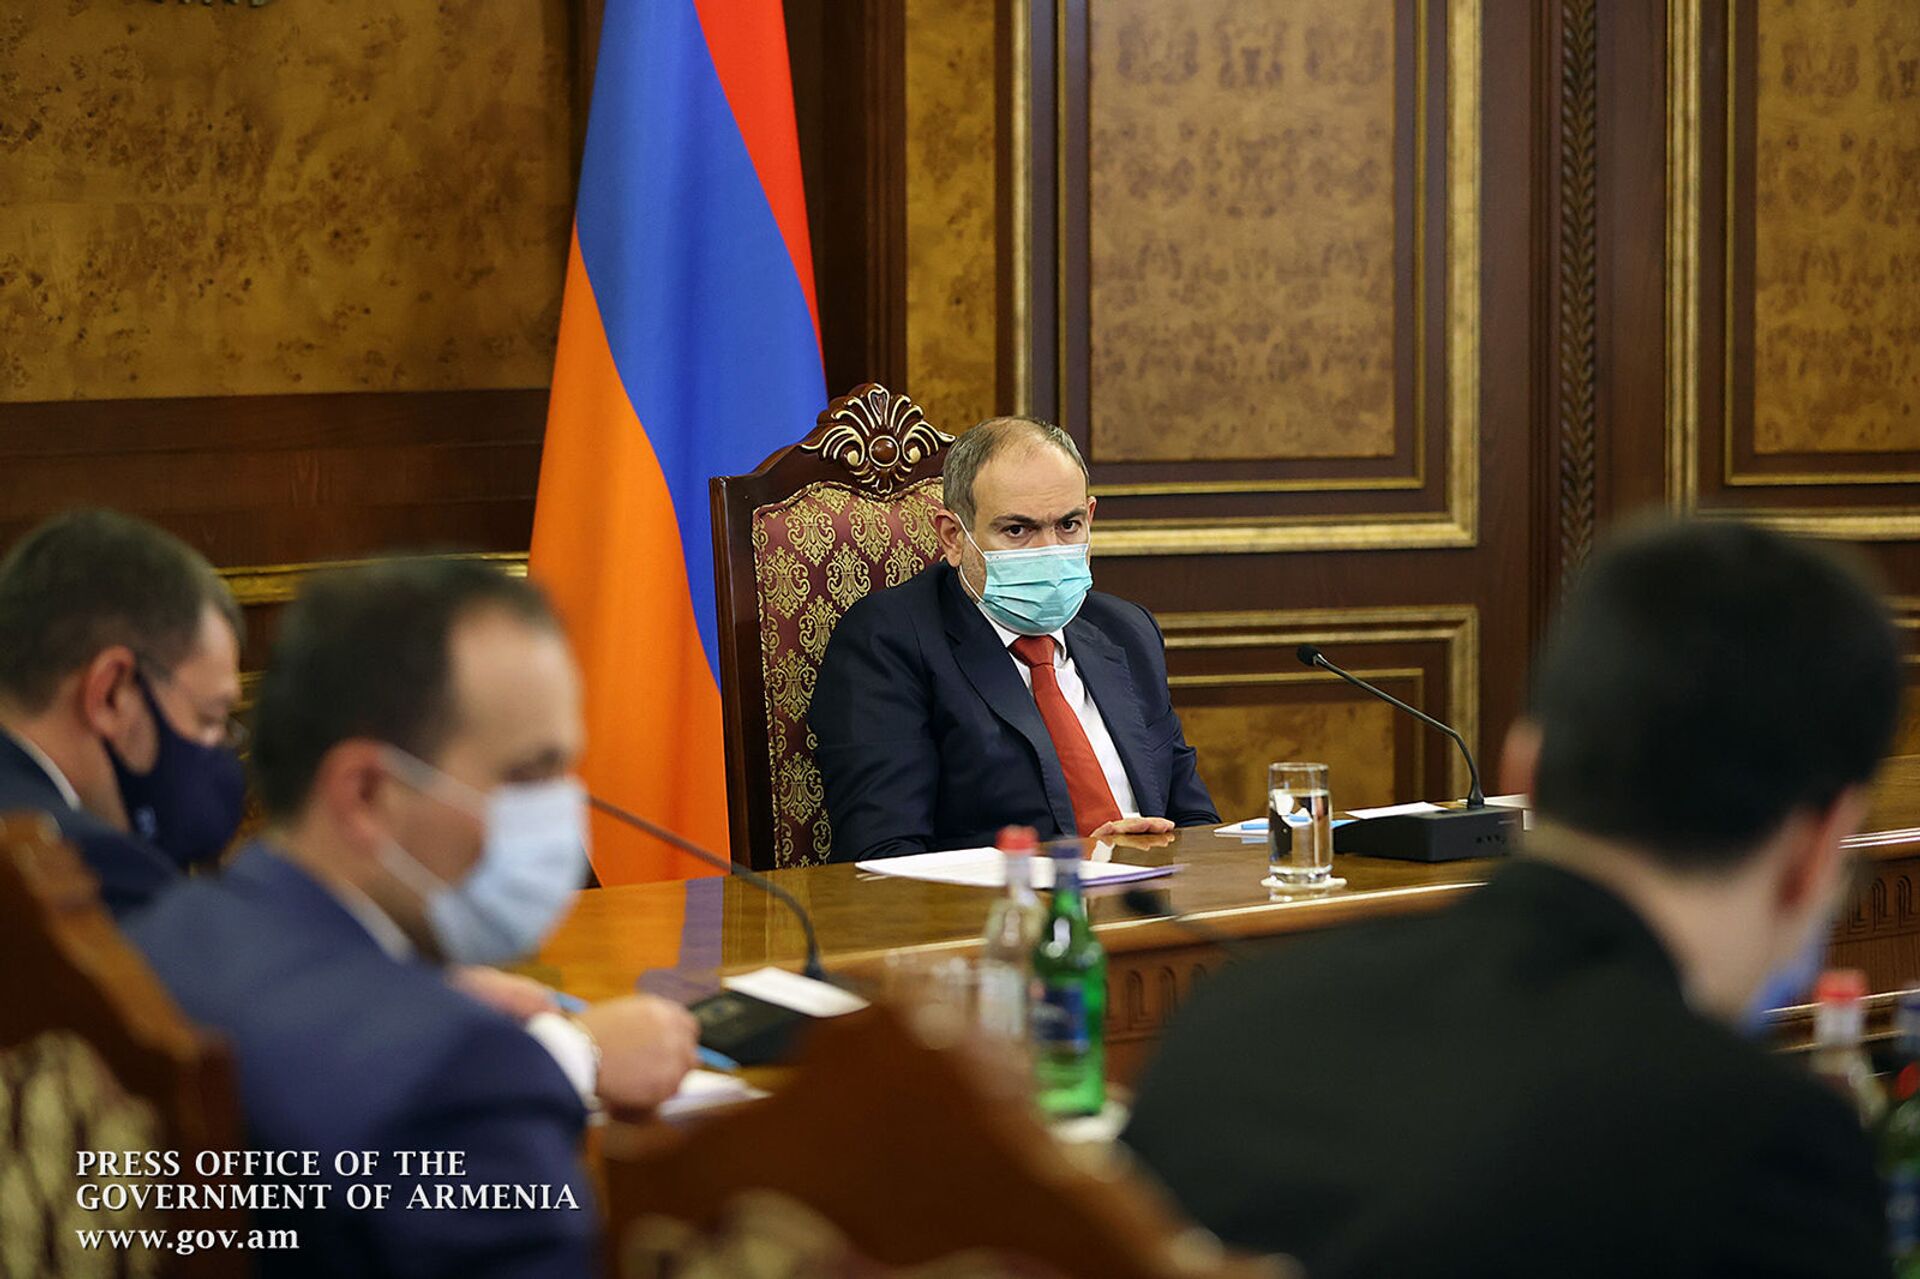 Уголовные дела против чиновников и не только: Пашинян провел антикоррупционное заседание - Sputnik Армения, 1920, 16.02.2021